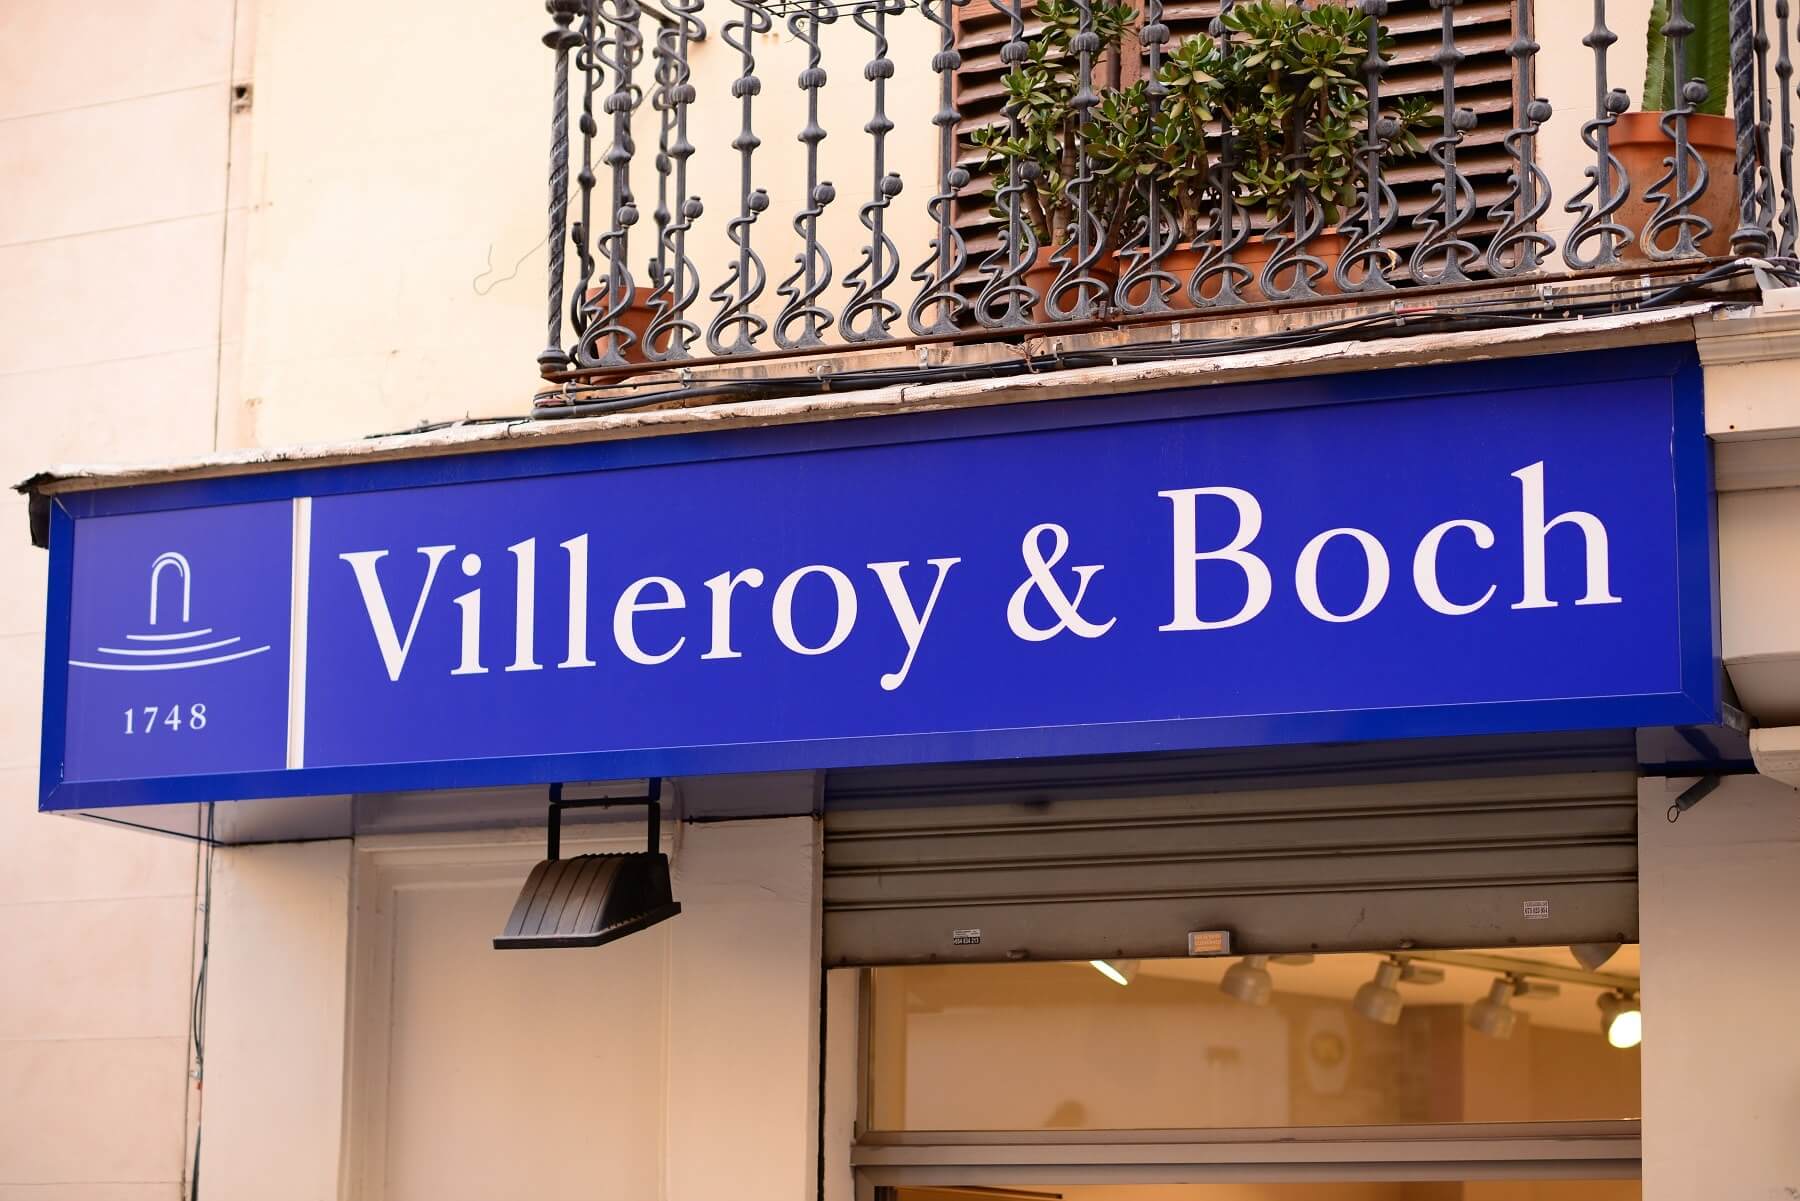 bons plans et souvenirs du luxembourg Villeroy & Bosh - Maly Designer  Shutterstock.com